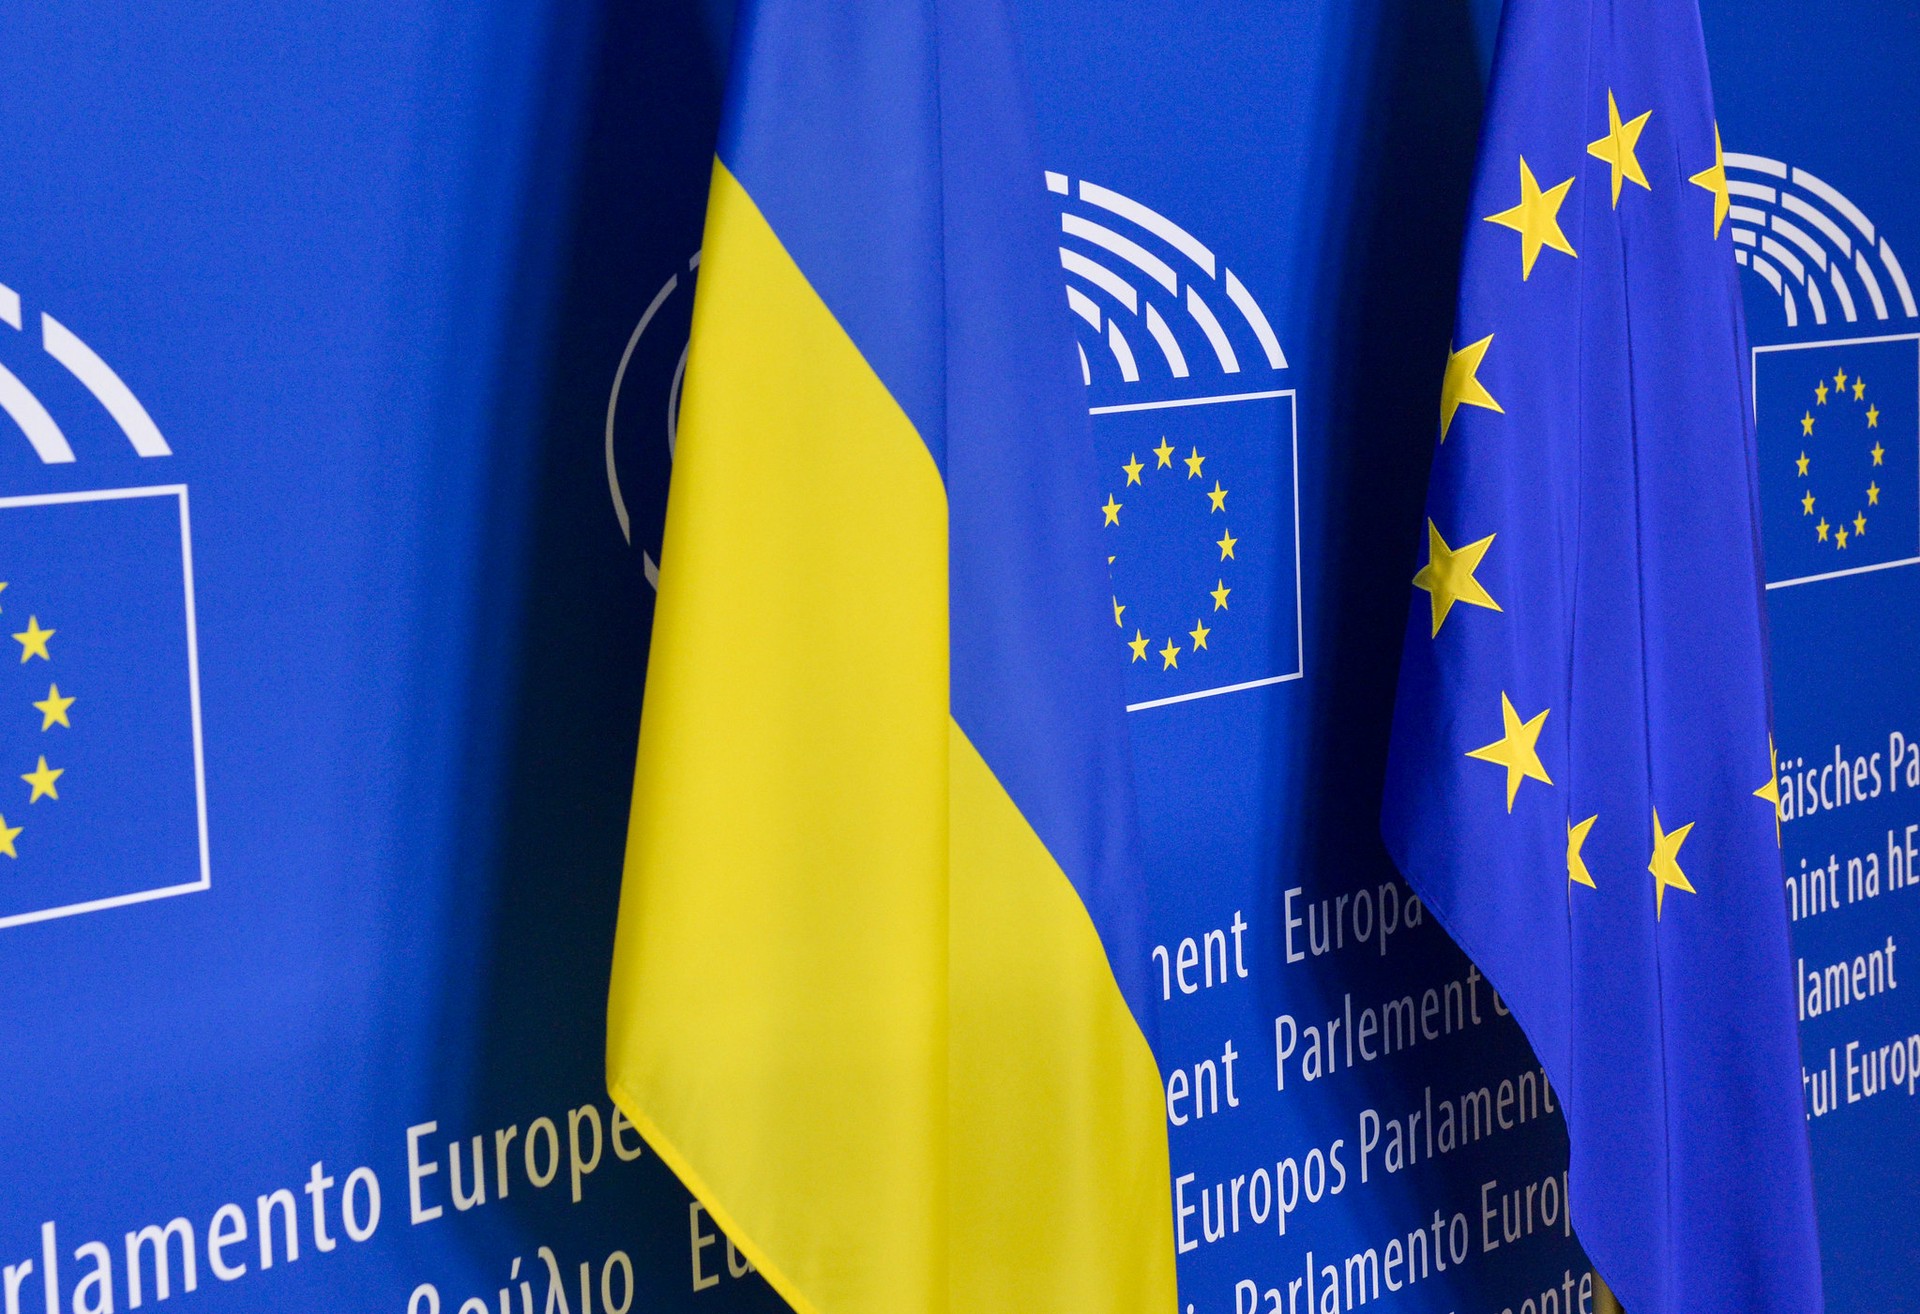 Magyar Hírlap: антивенгерская политика Зеленского помешает Украине вступить в ЕС 